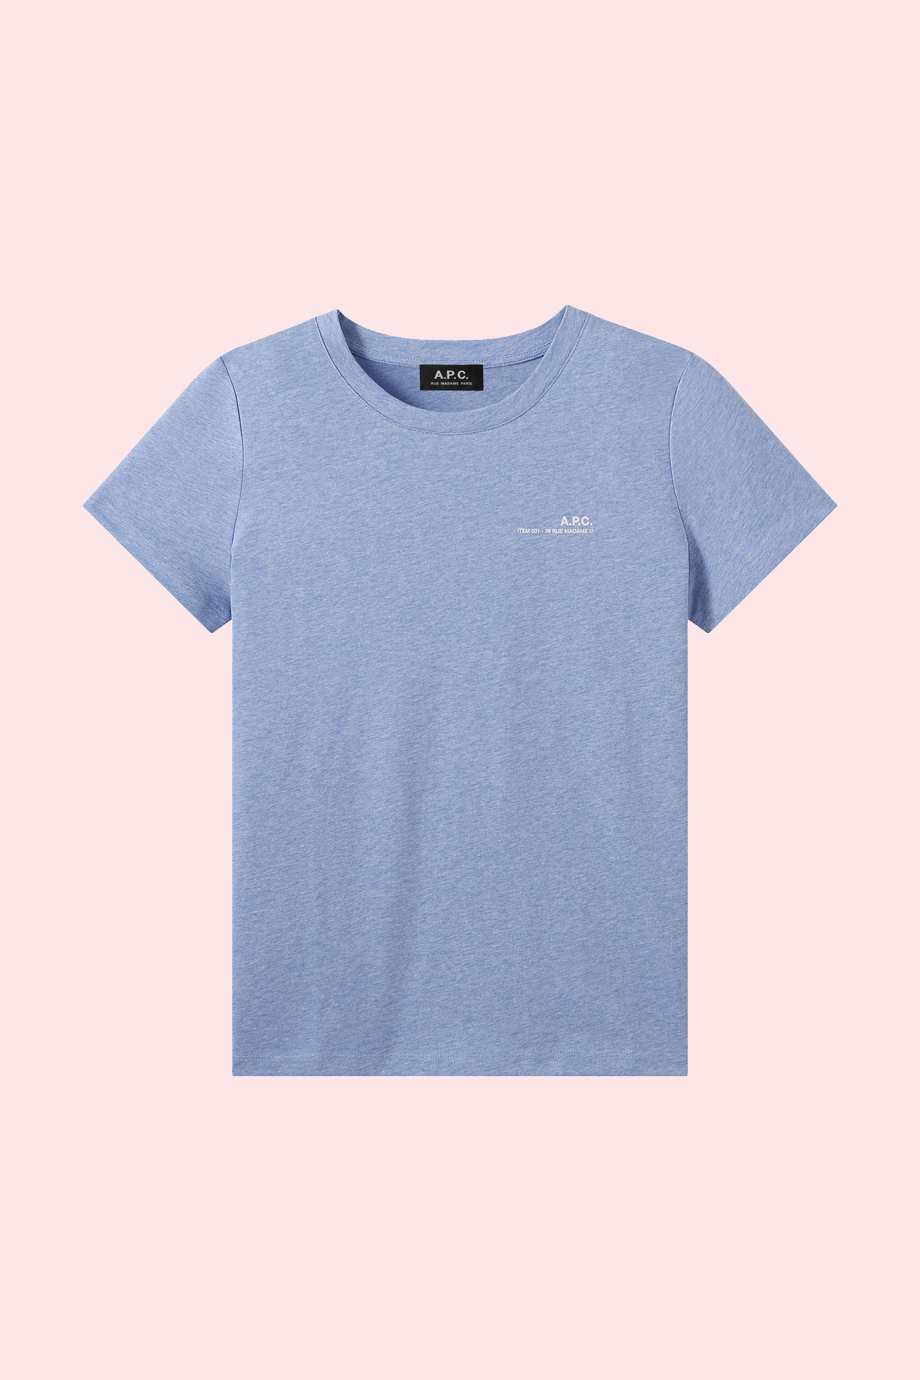 APC t-shirt Item F bleu ciel chine  product